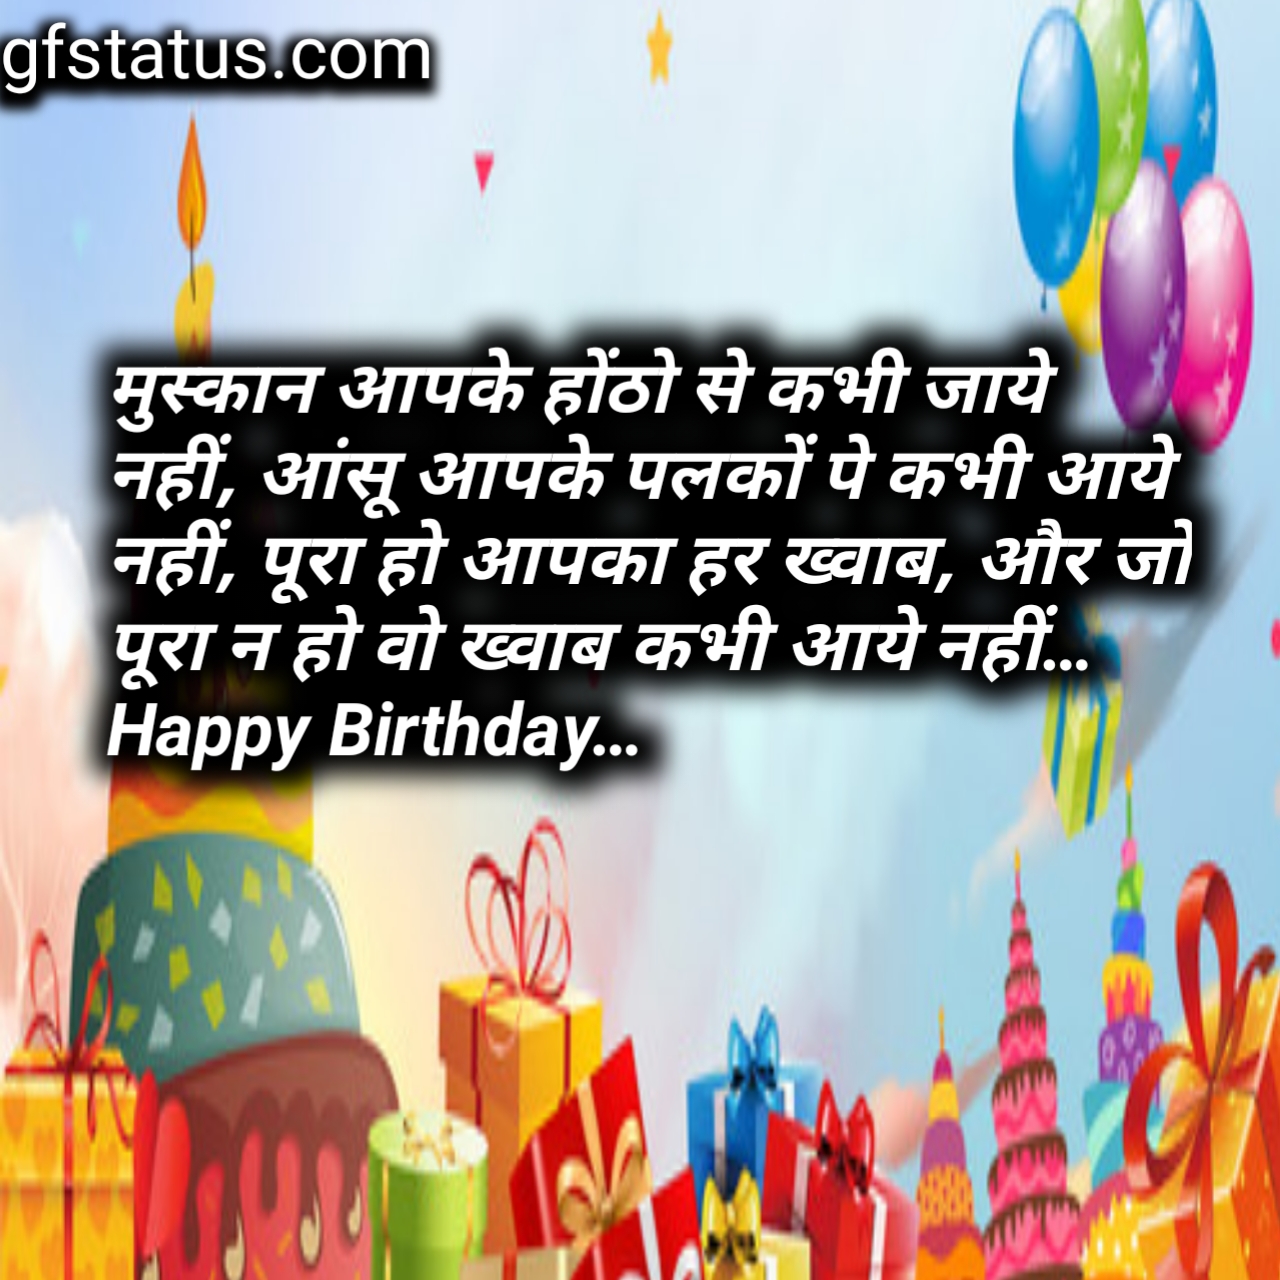 Birthday shayari in Hindi/new shayari - GF status